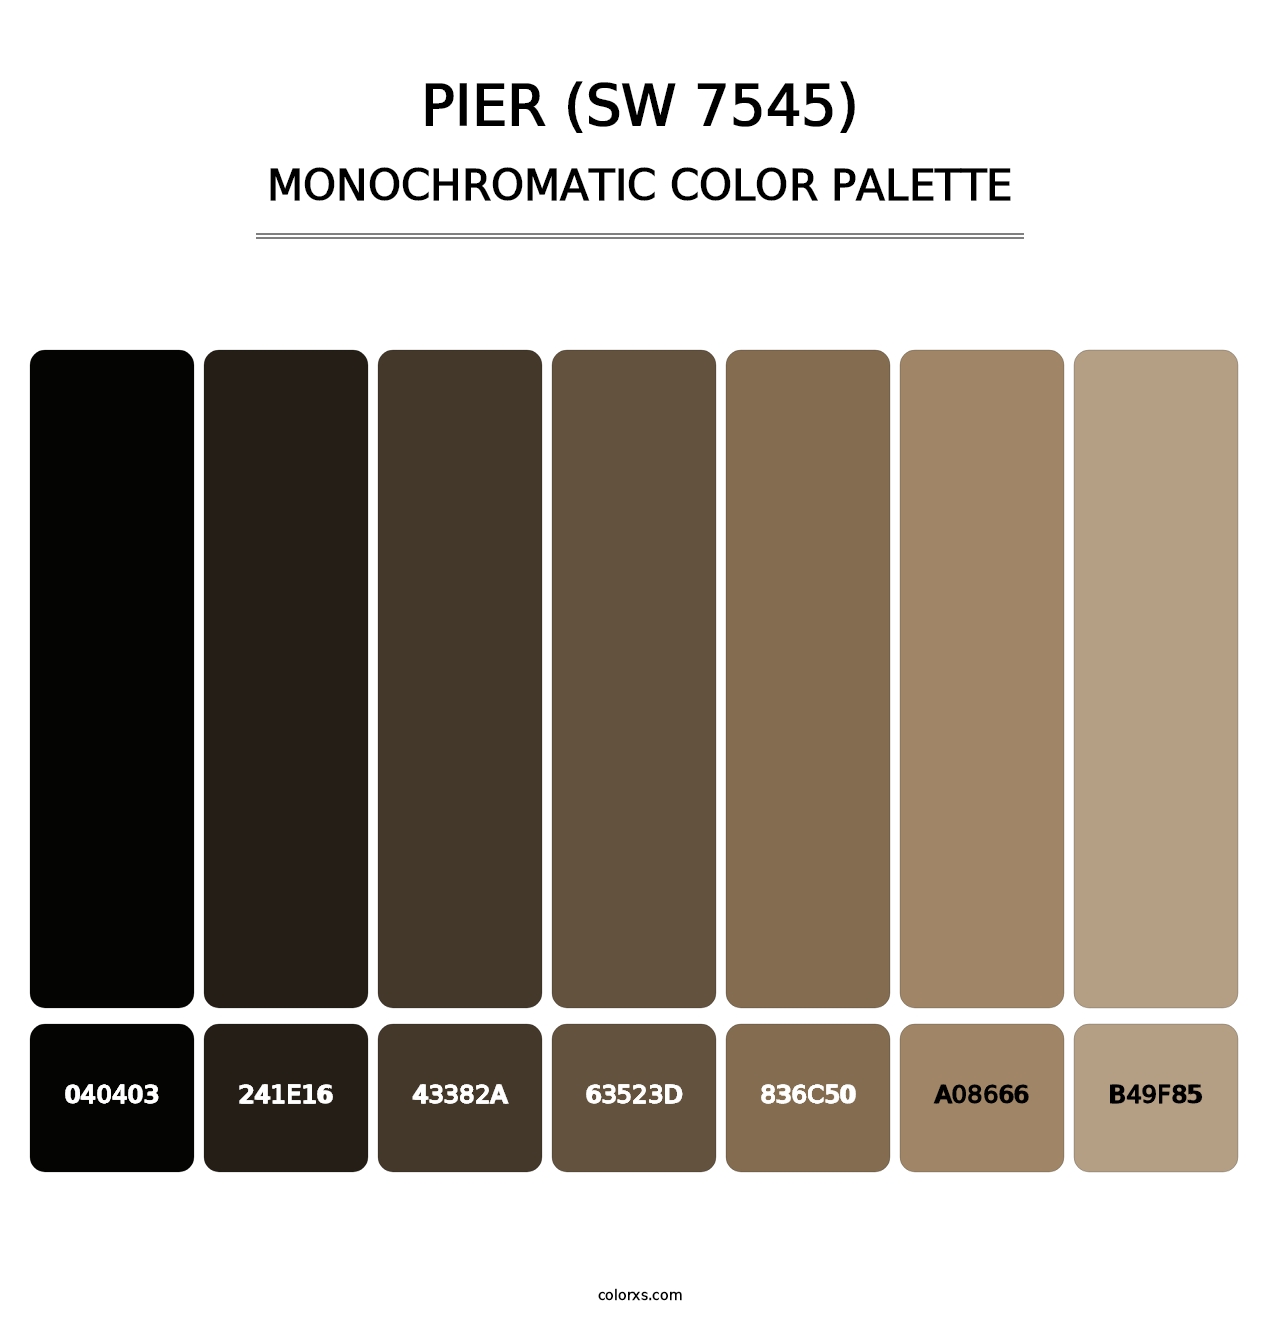 Pier (SW 7545) - Monochromatic Color Palette